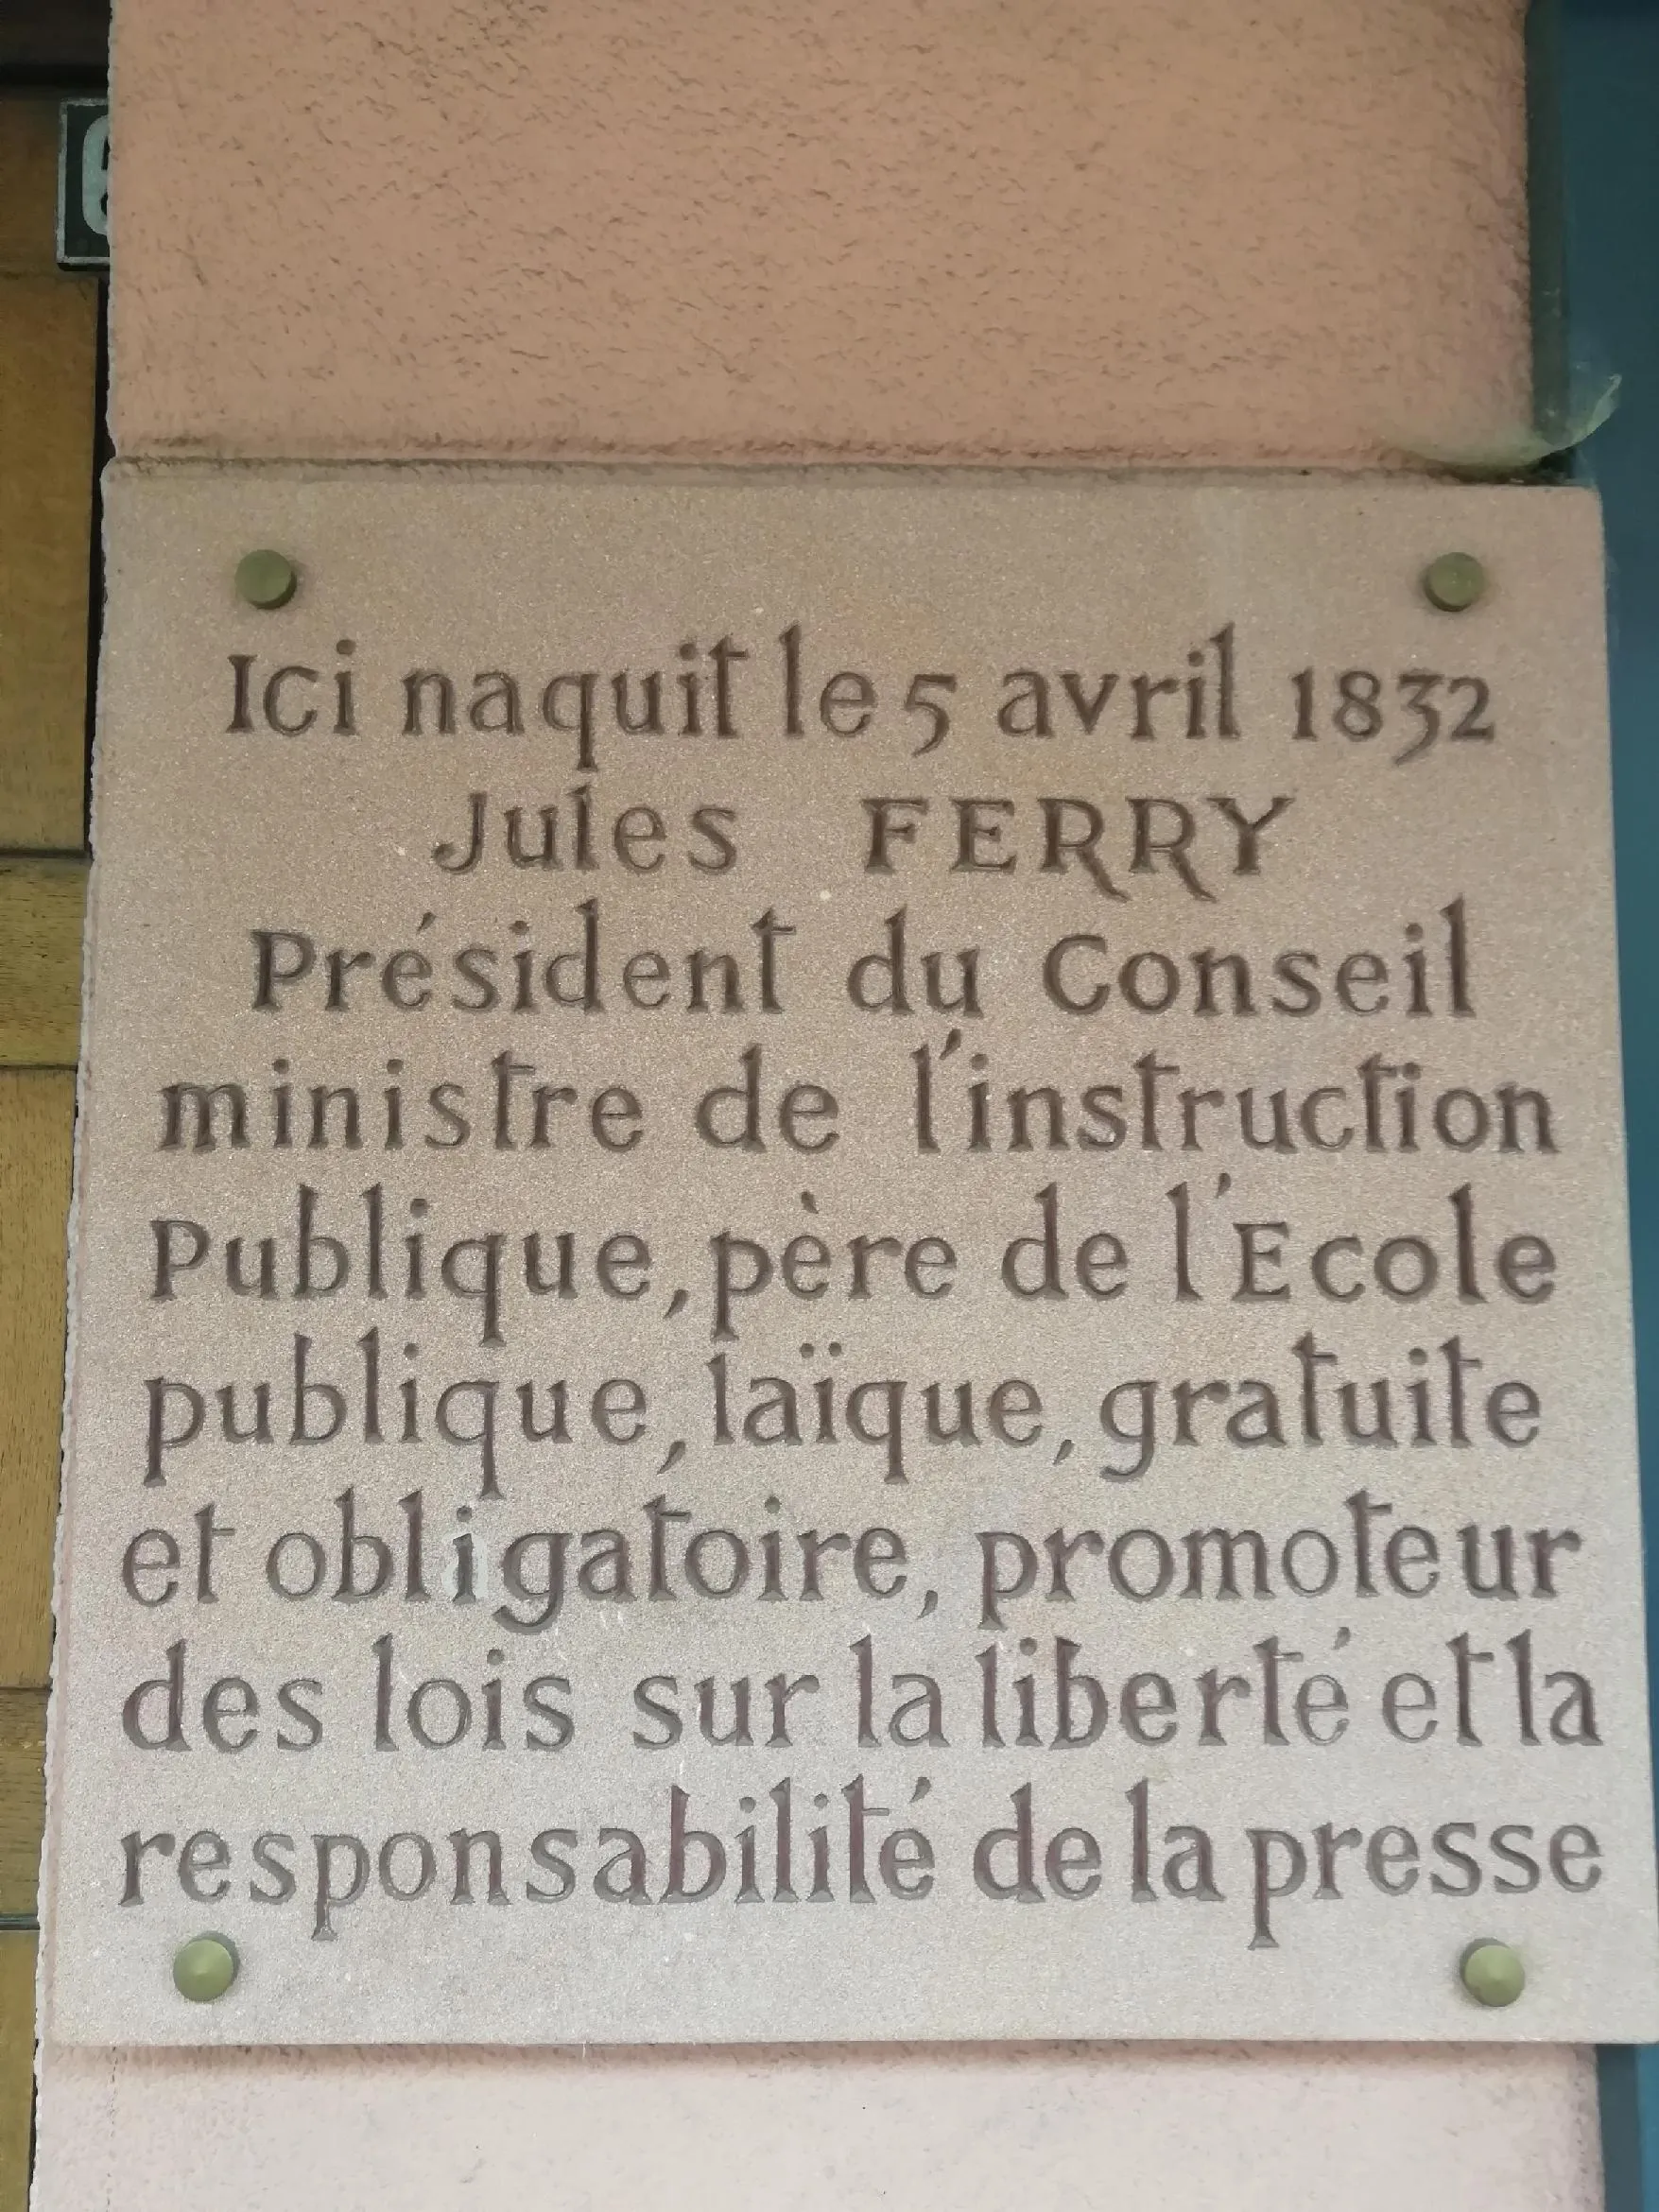 Image qui illustre: Un Vosgien nommé Jules Ferry